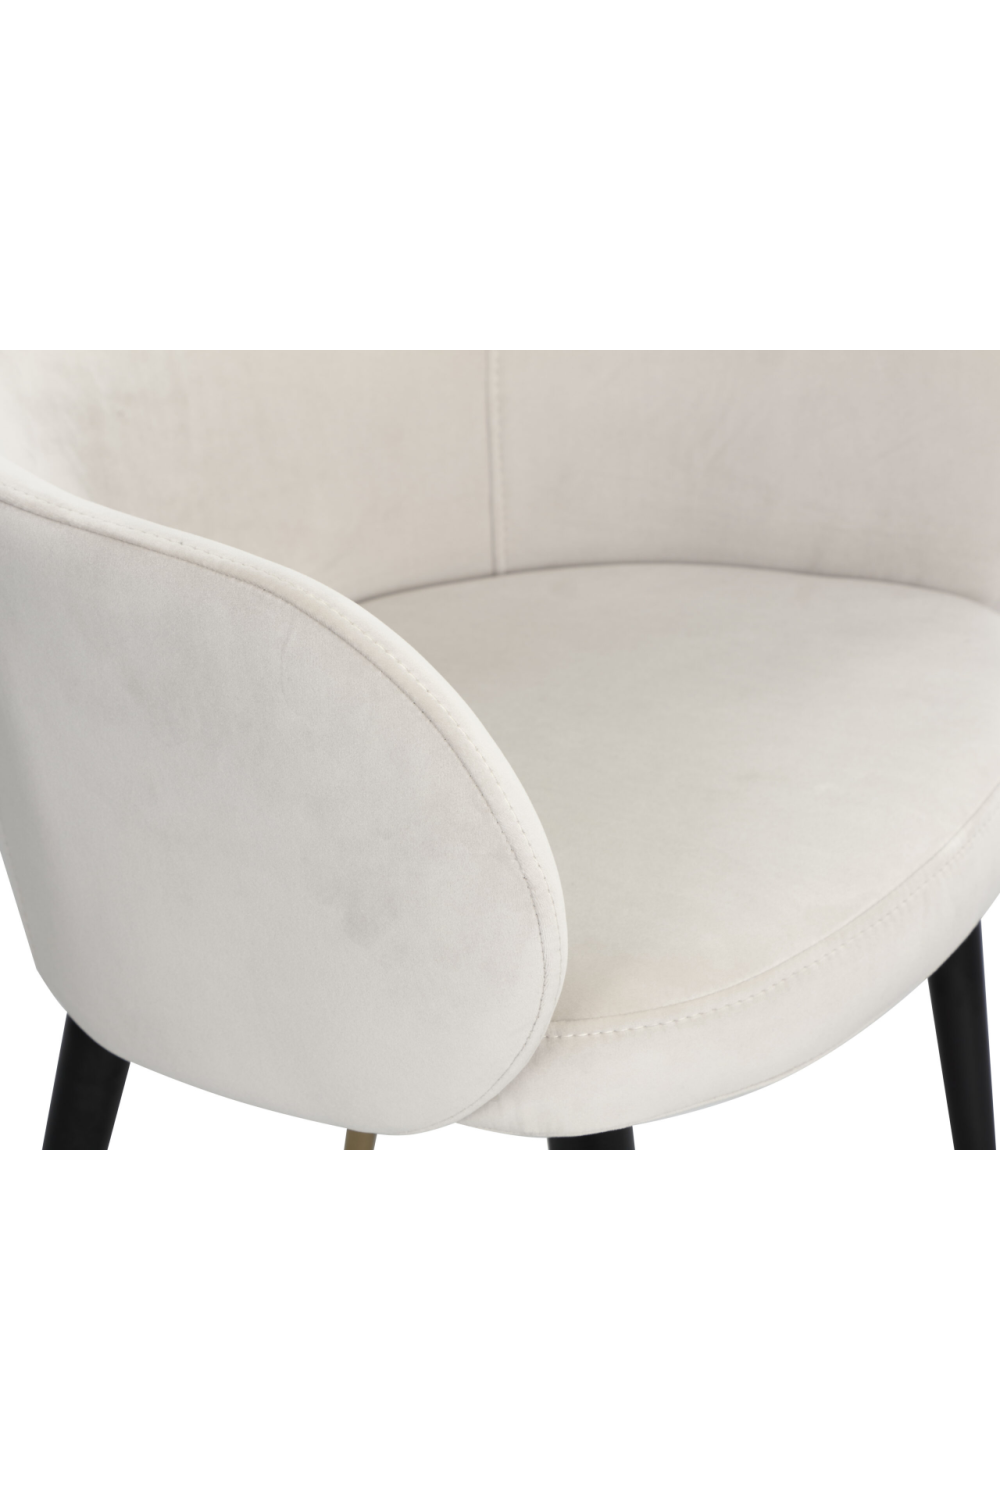 White Velvet Dining Chair | Liang & Eimil Ola | Oroa.com